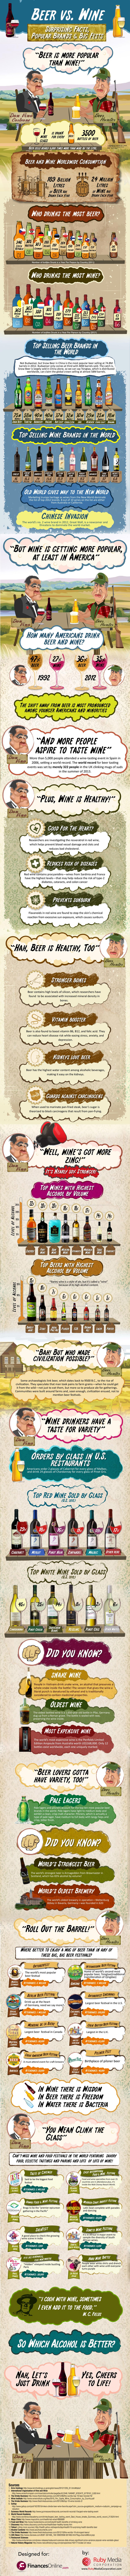 beer-vs-wine-infographic